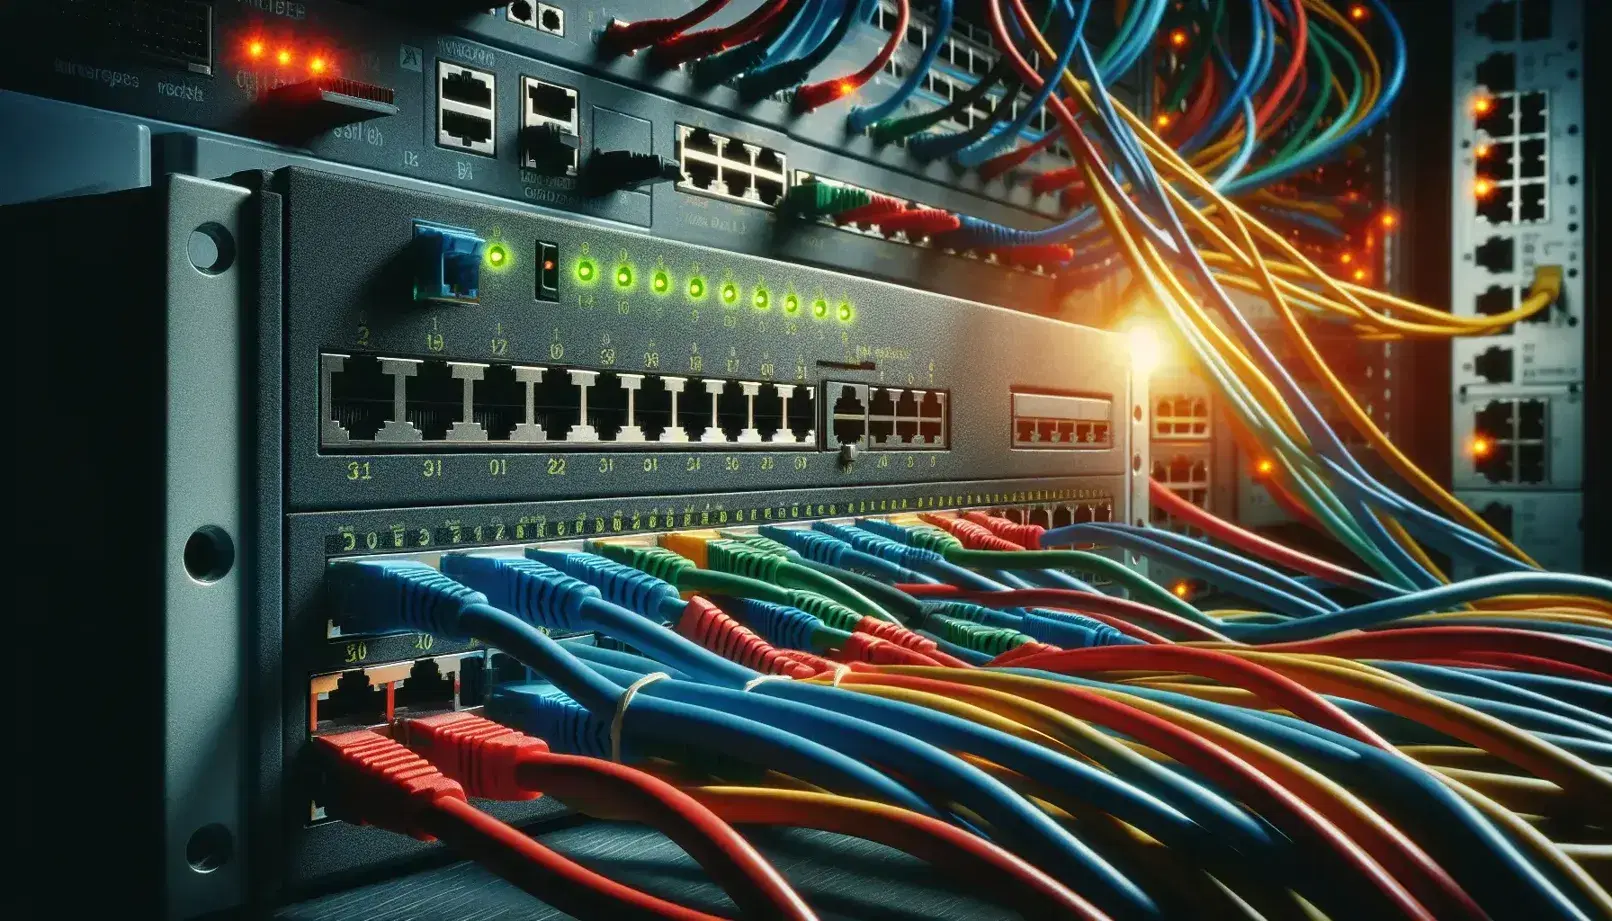 Cables de red de colores entrelazados conectados a un switch con luces LED verdes y naranjas, y un panel de conexiones desenfocado al fondo.